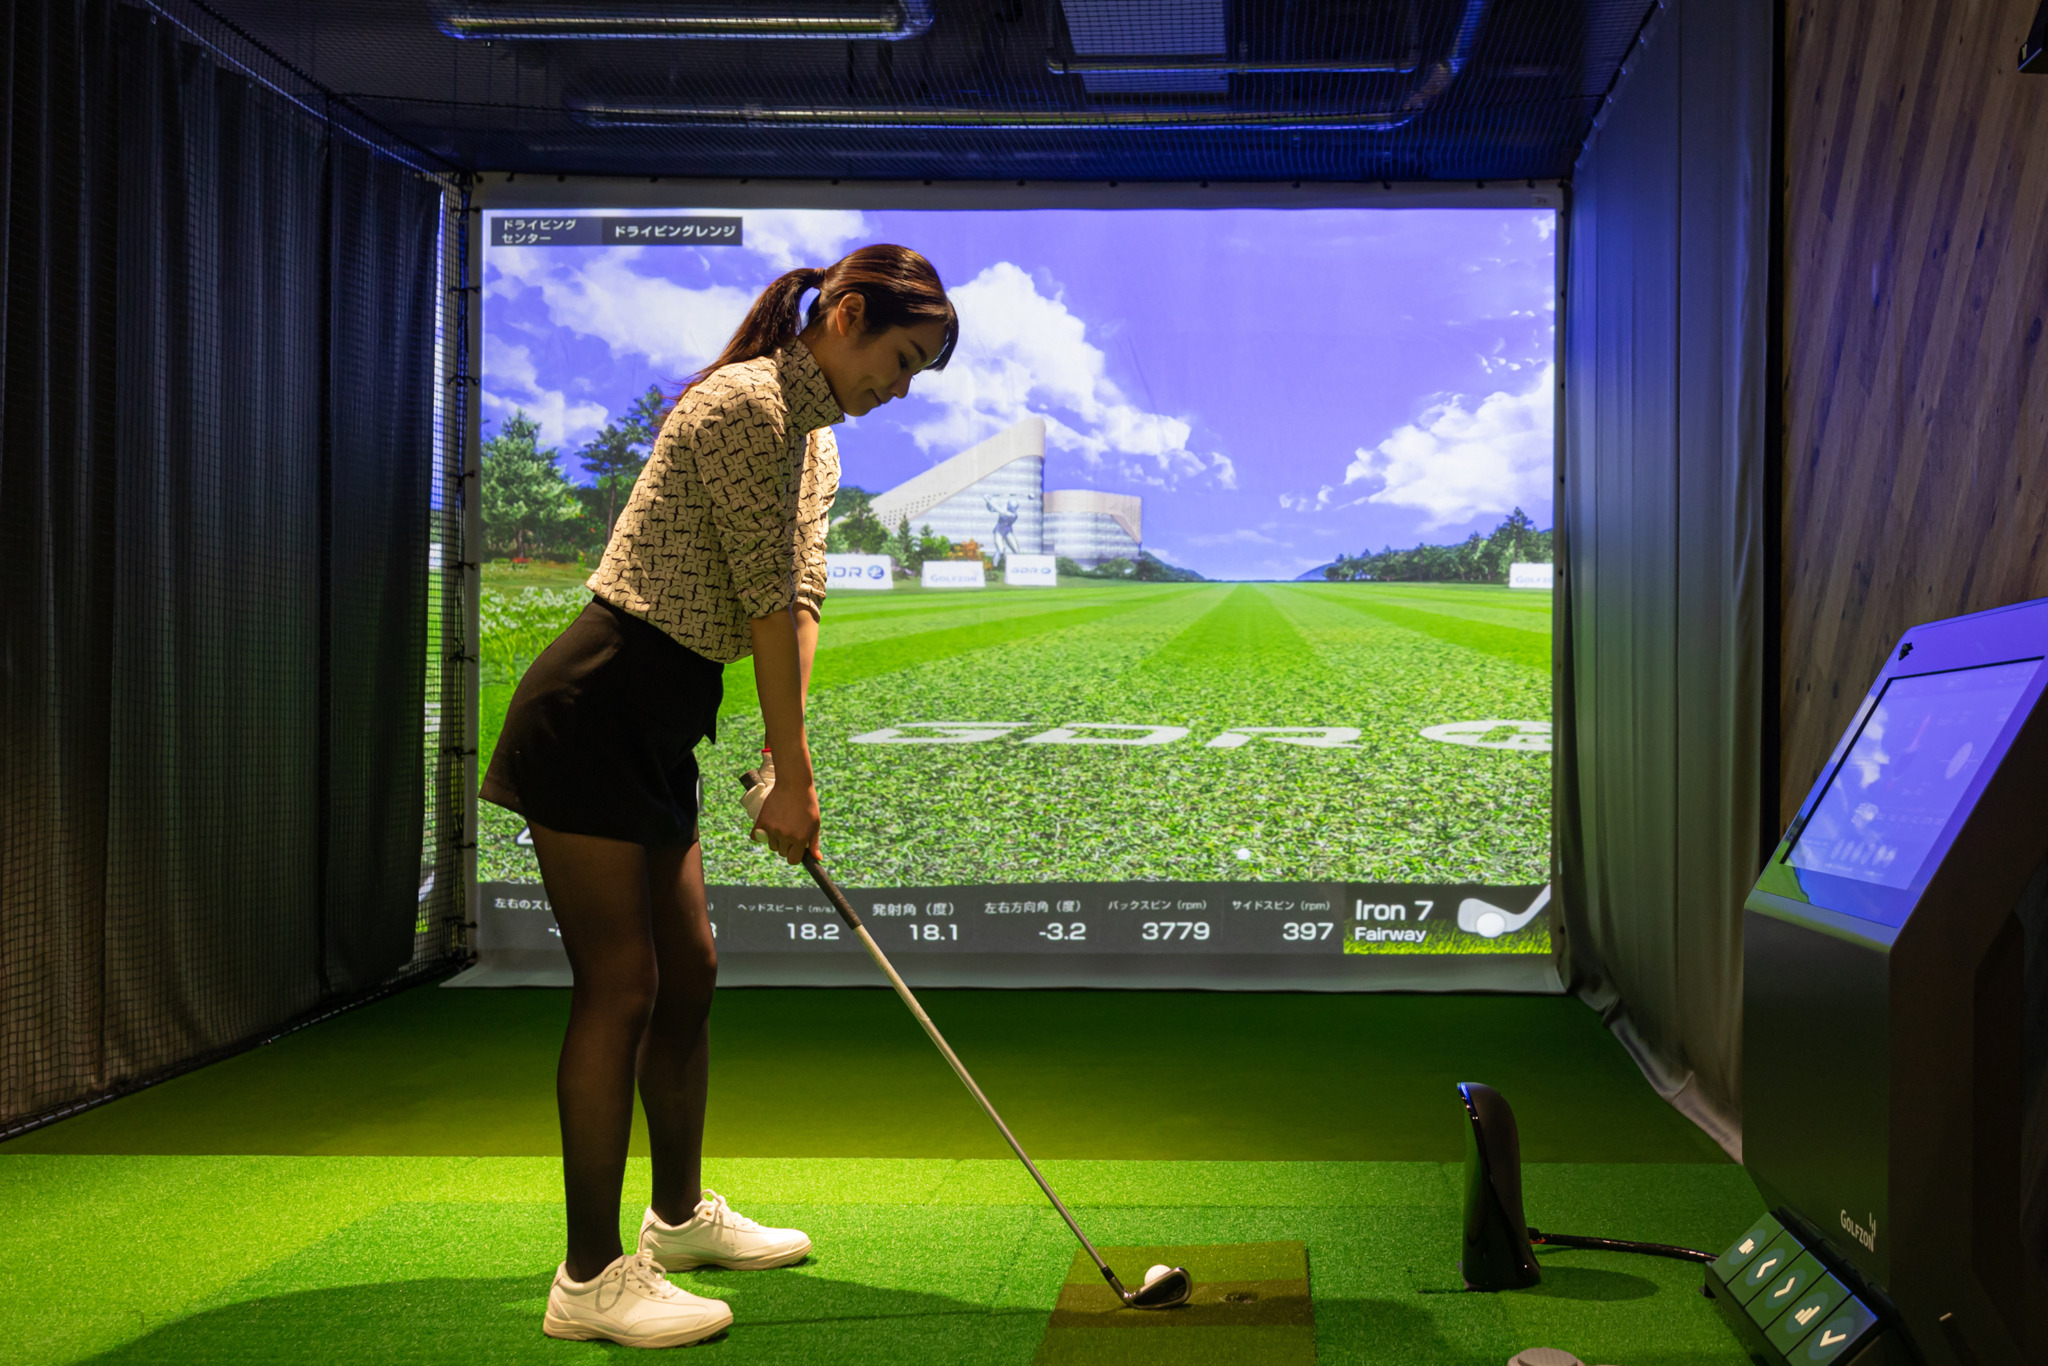 Z-1インドアゴルフ 和光店の打席で練習する女性